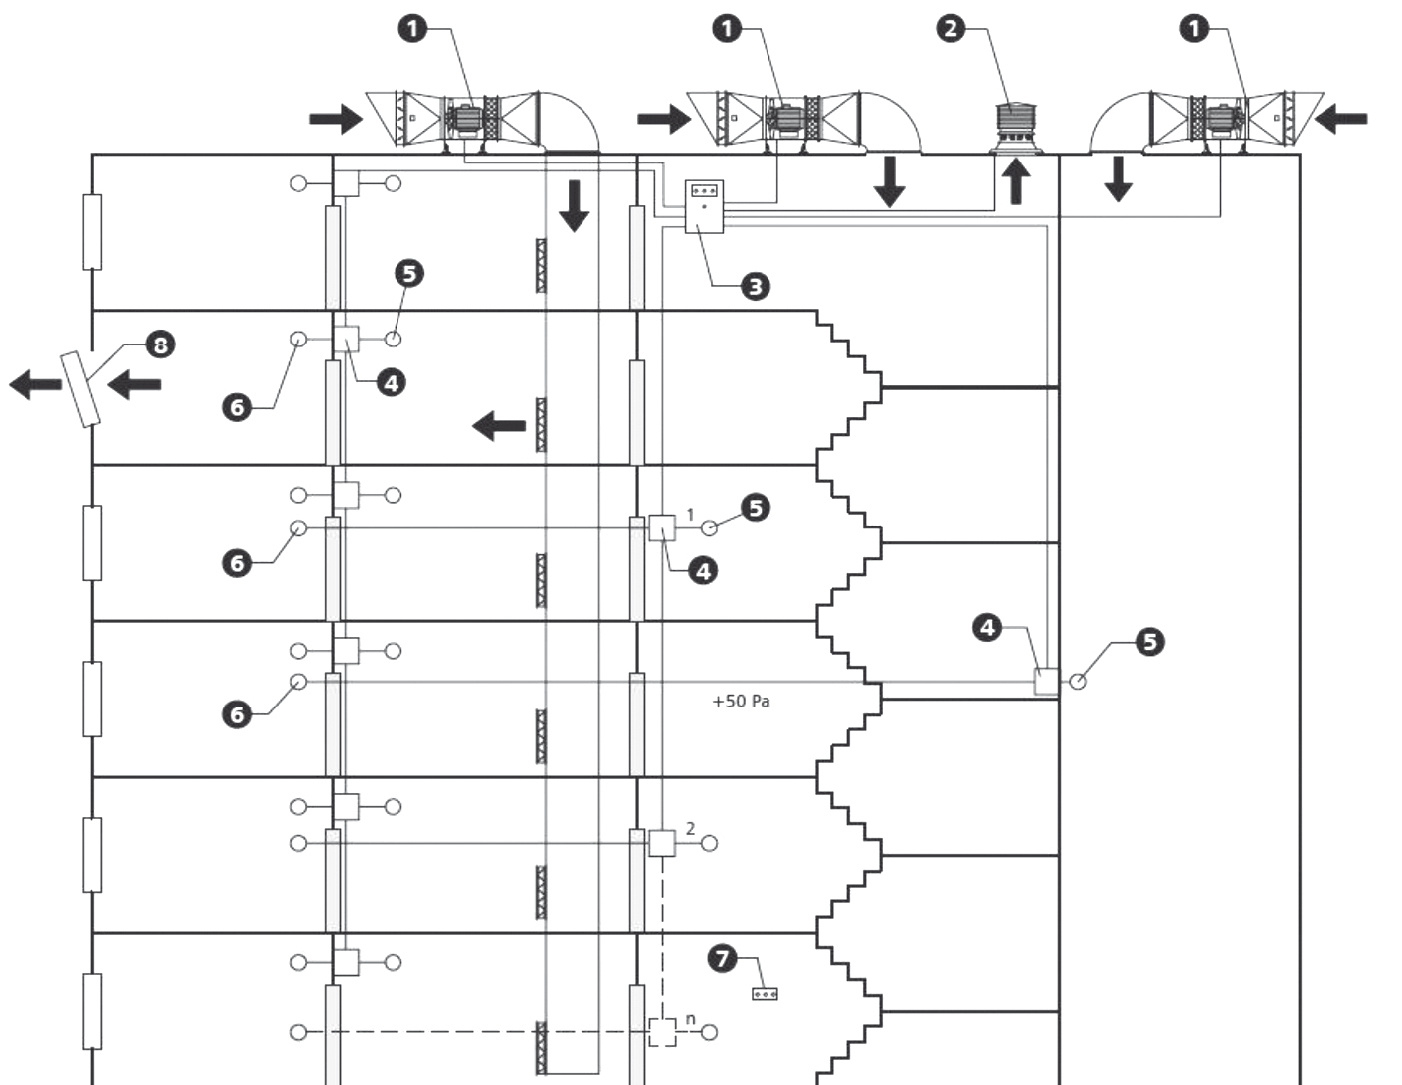 Bloková schéma systému pretlakového vetrania mcr EXi 1 – Prívodná jednotka s klapkou a snímačom dymu, 2 – Vypúšťacia hlavica RPC (opcia), 3 – Mcr Omega napájacia a riadiaca jednotka, 4 – Prevodník diferenčného tlaku, 5 – Bod merania tlaku, 6 – Referenčný bod, 7 – PSR panel ručného ovládania, 8 – Vypúšťanie vzduchu